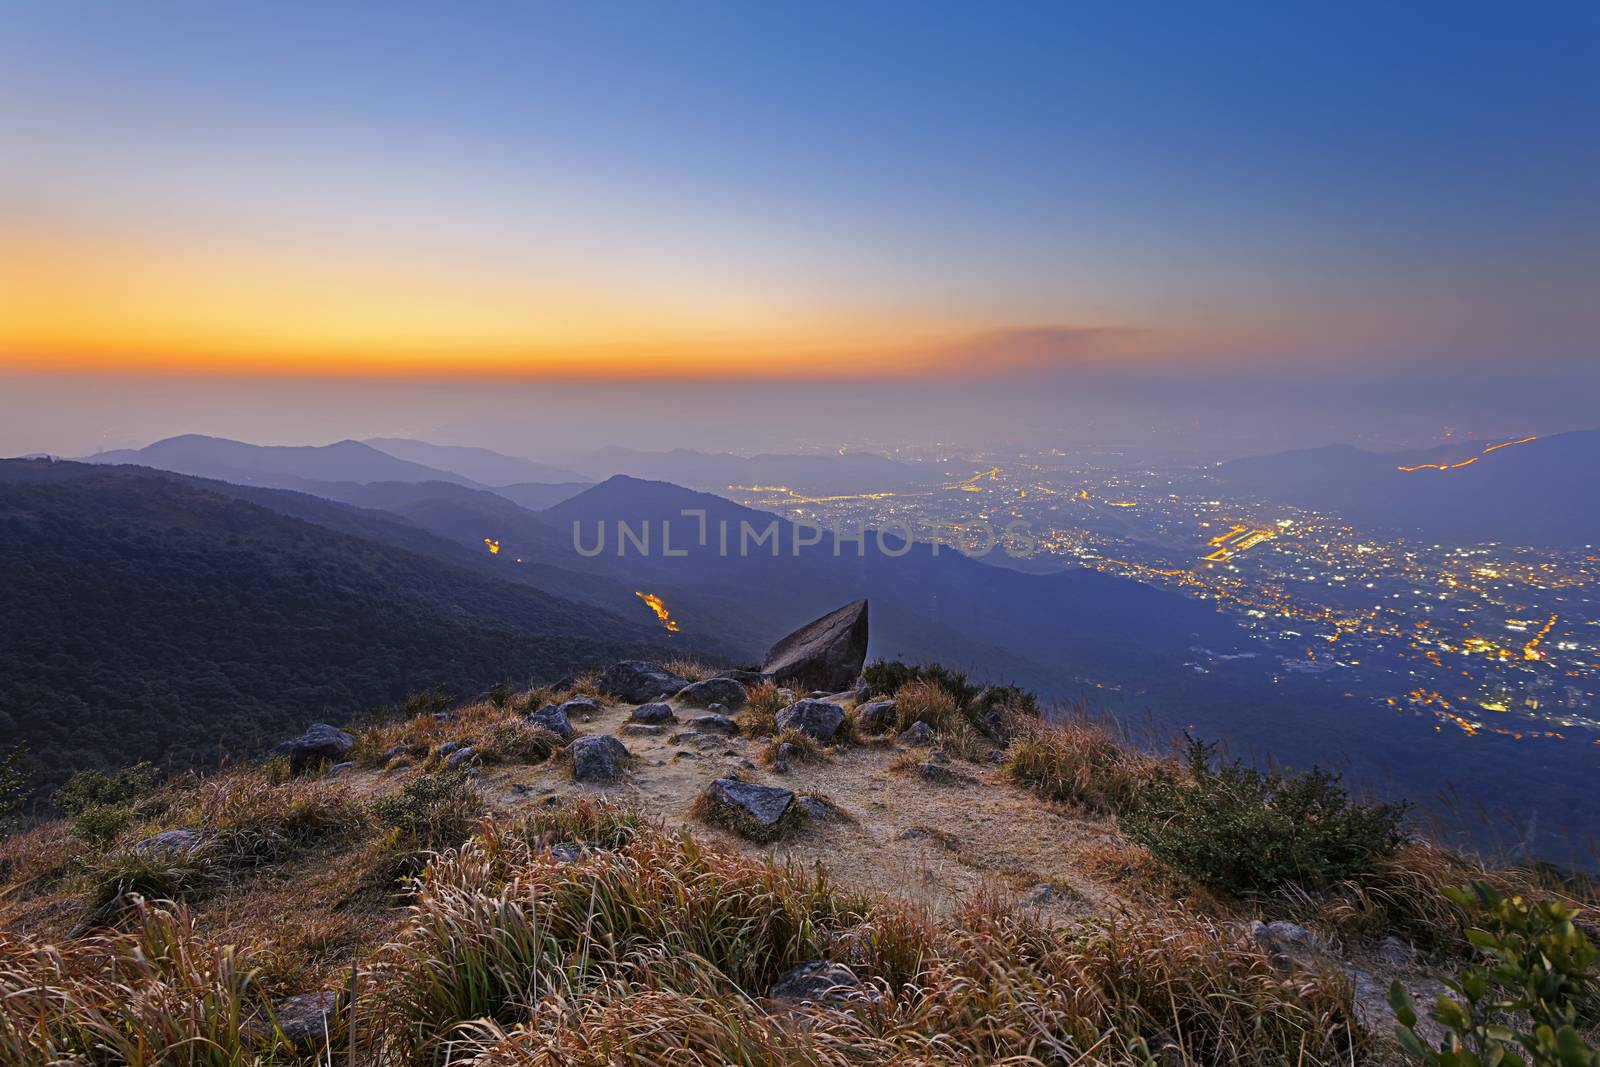 Tai Mo Shan sunset, hong kong famous mountain